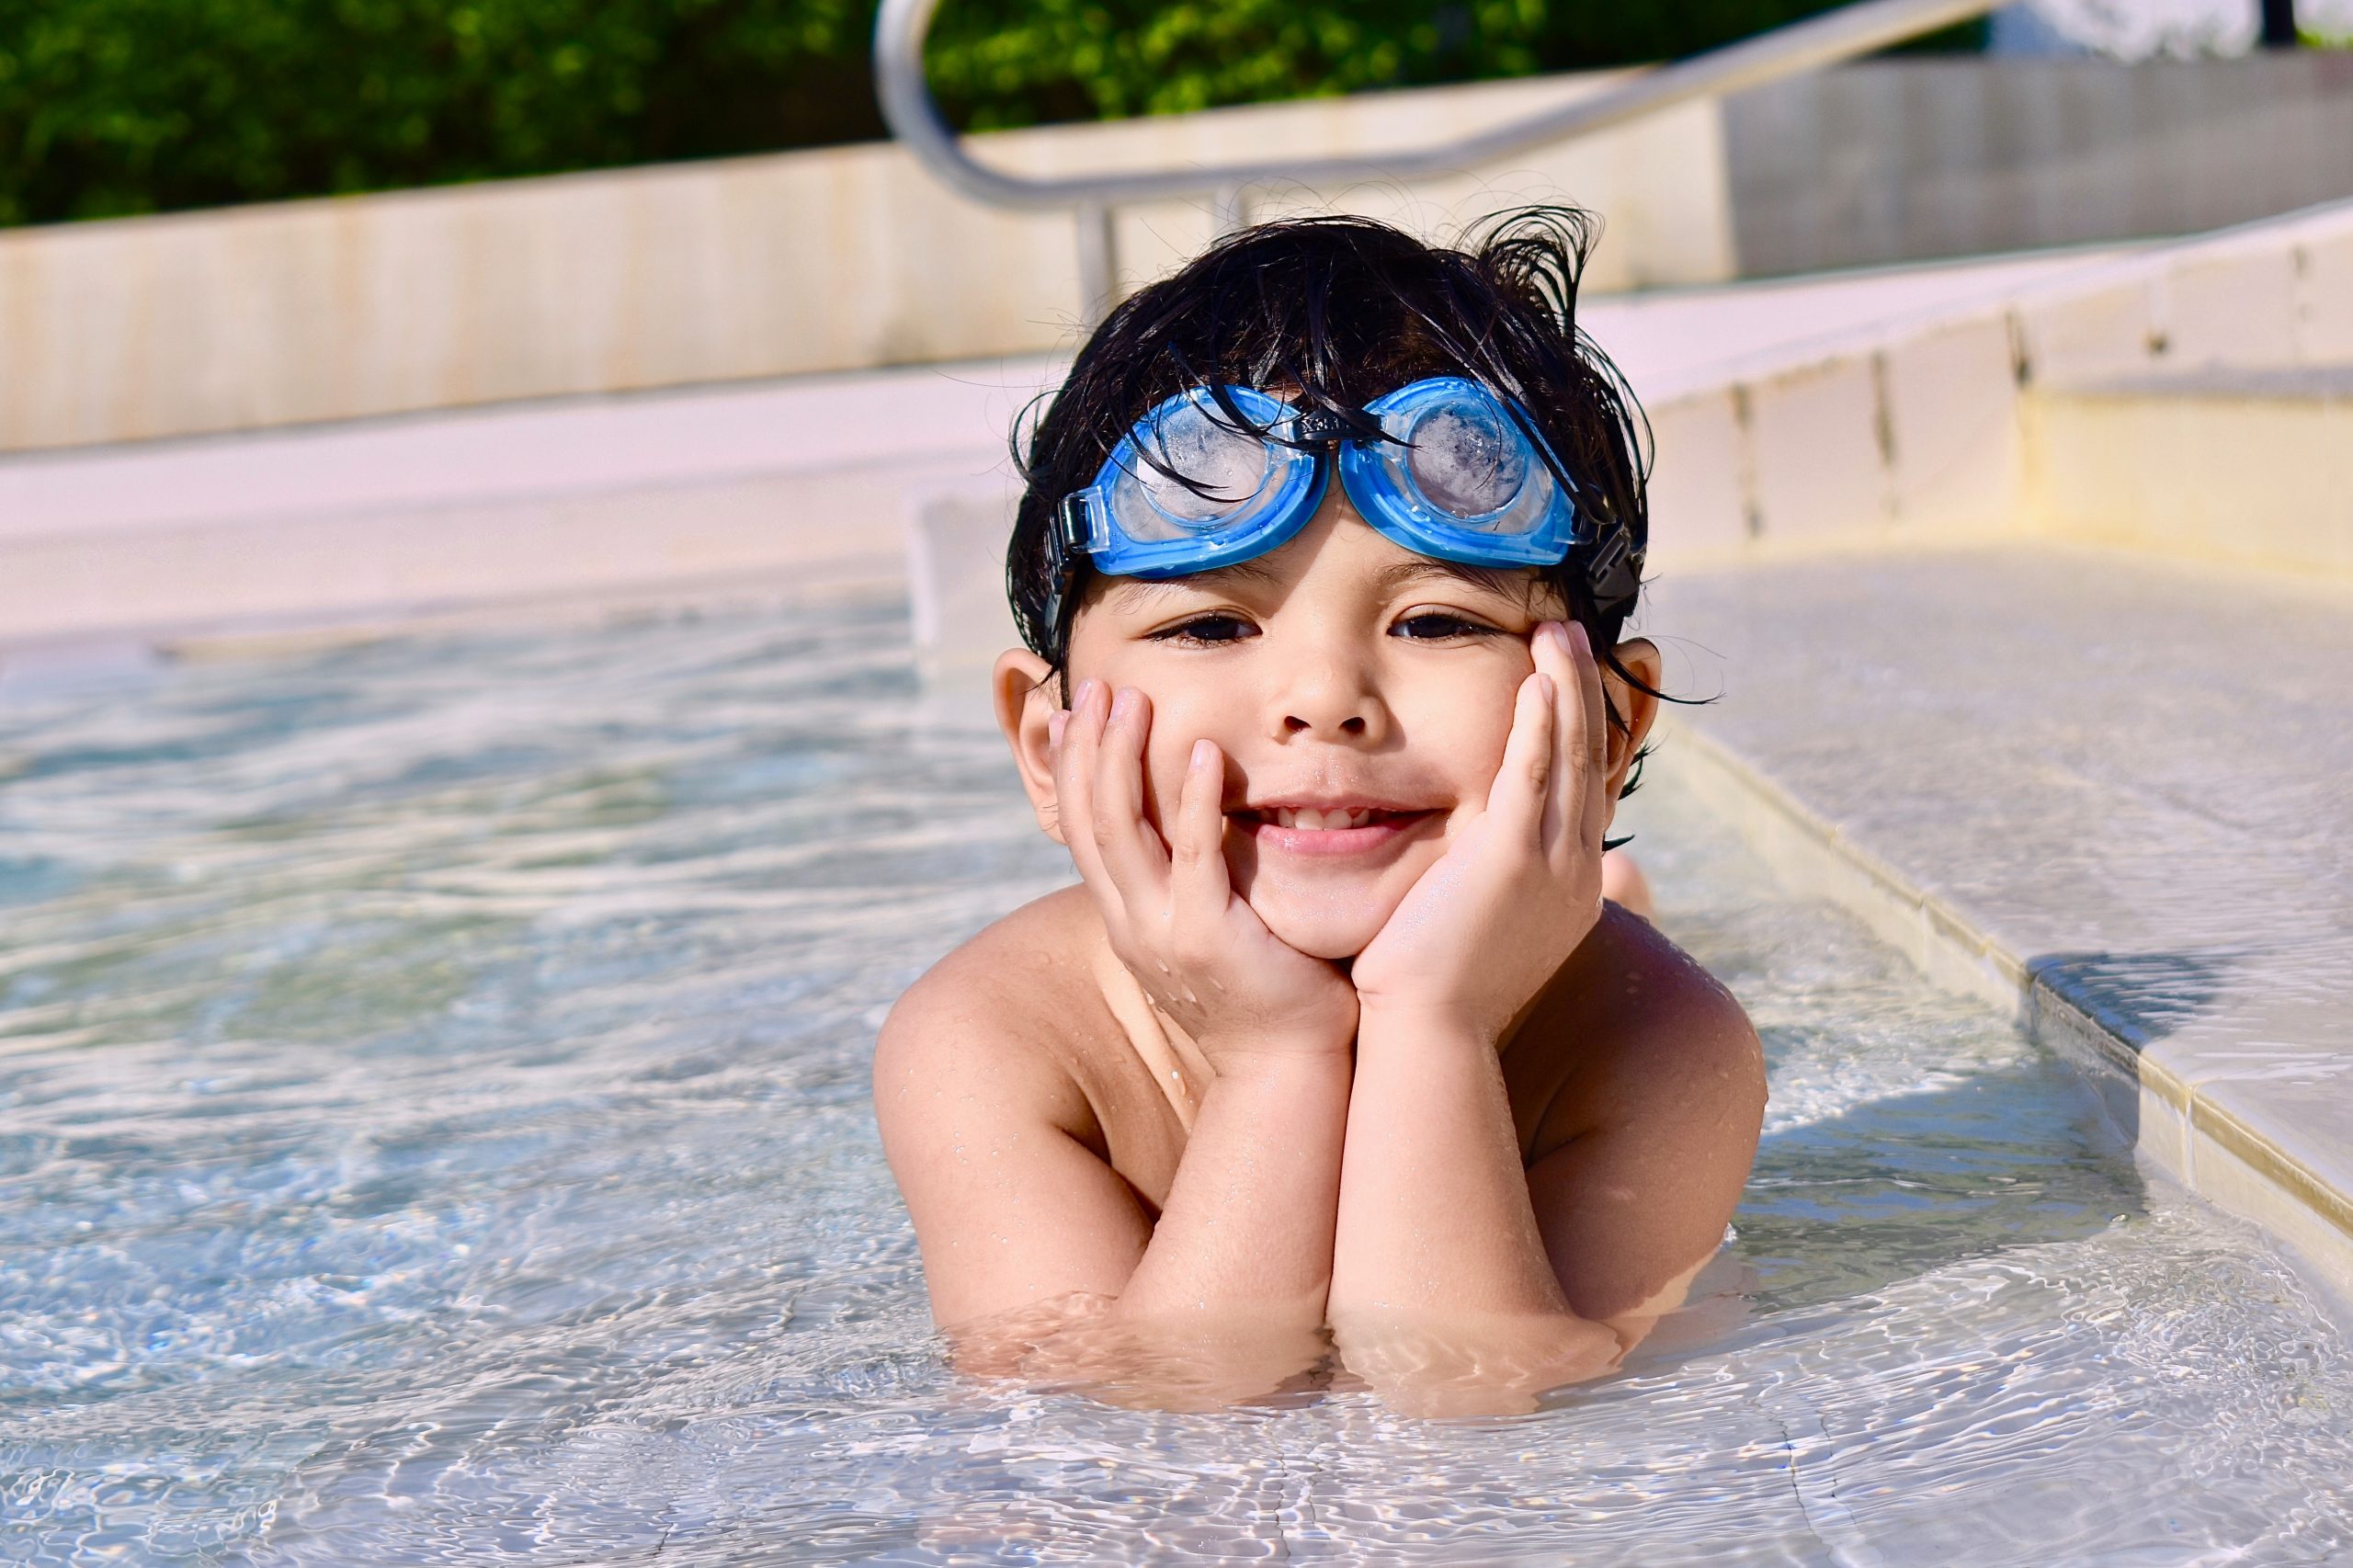 Mantenga limpia la piscina de sus hijos – ¡Consejos y trucos para todas las madres!